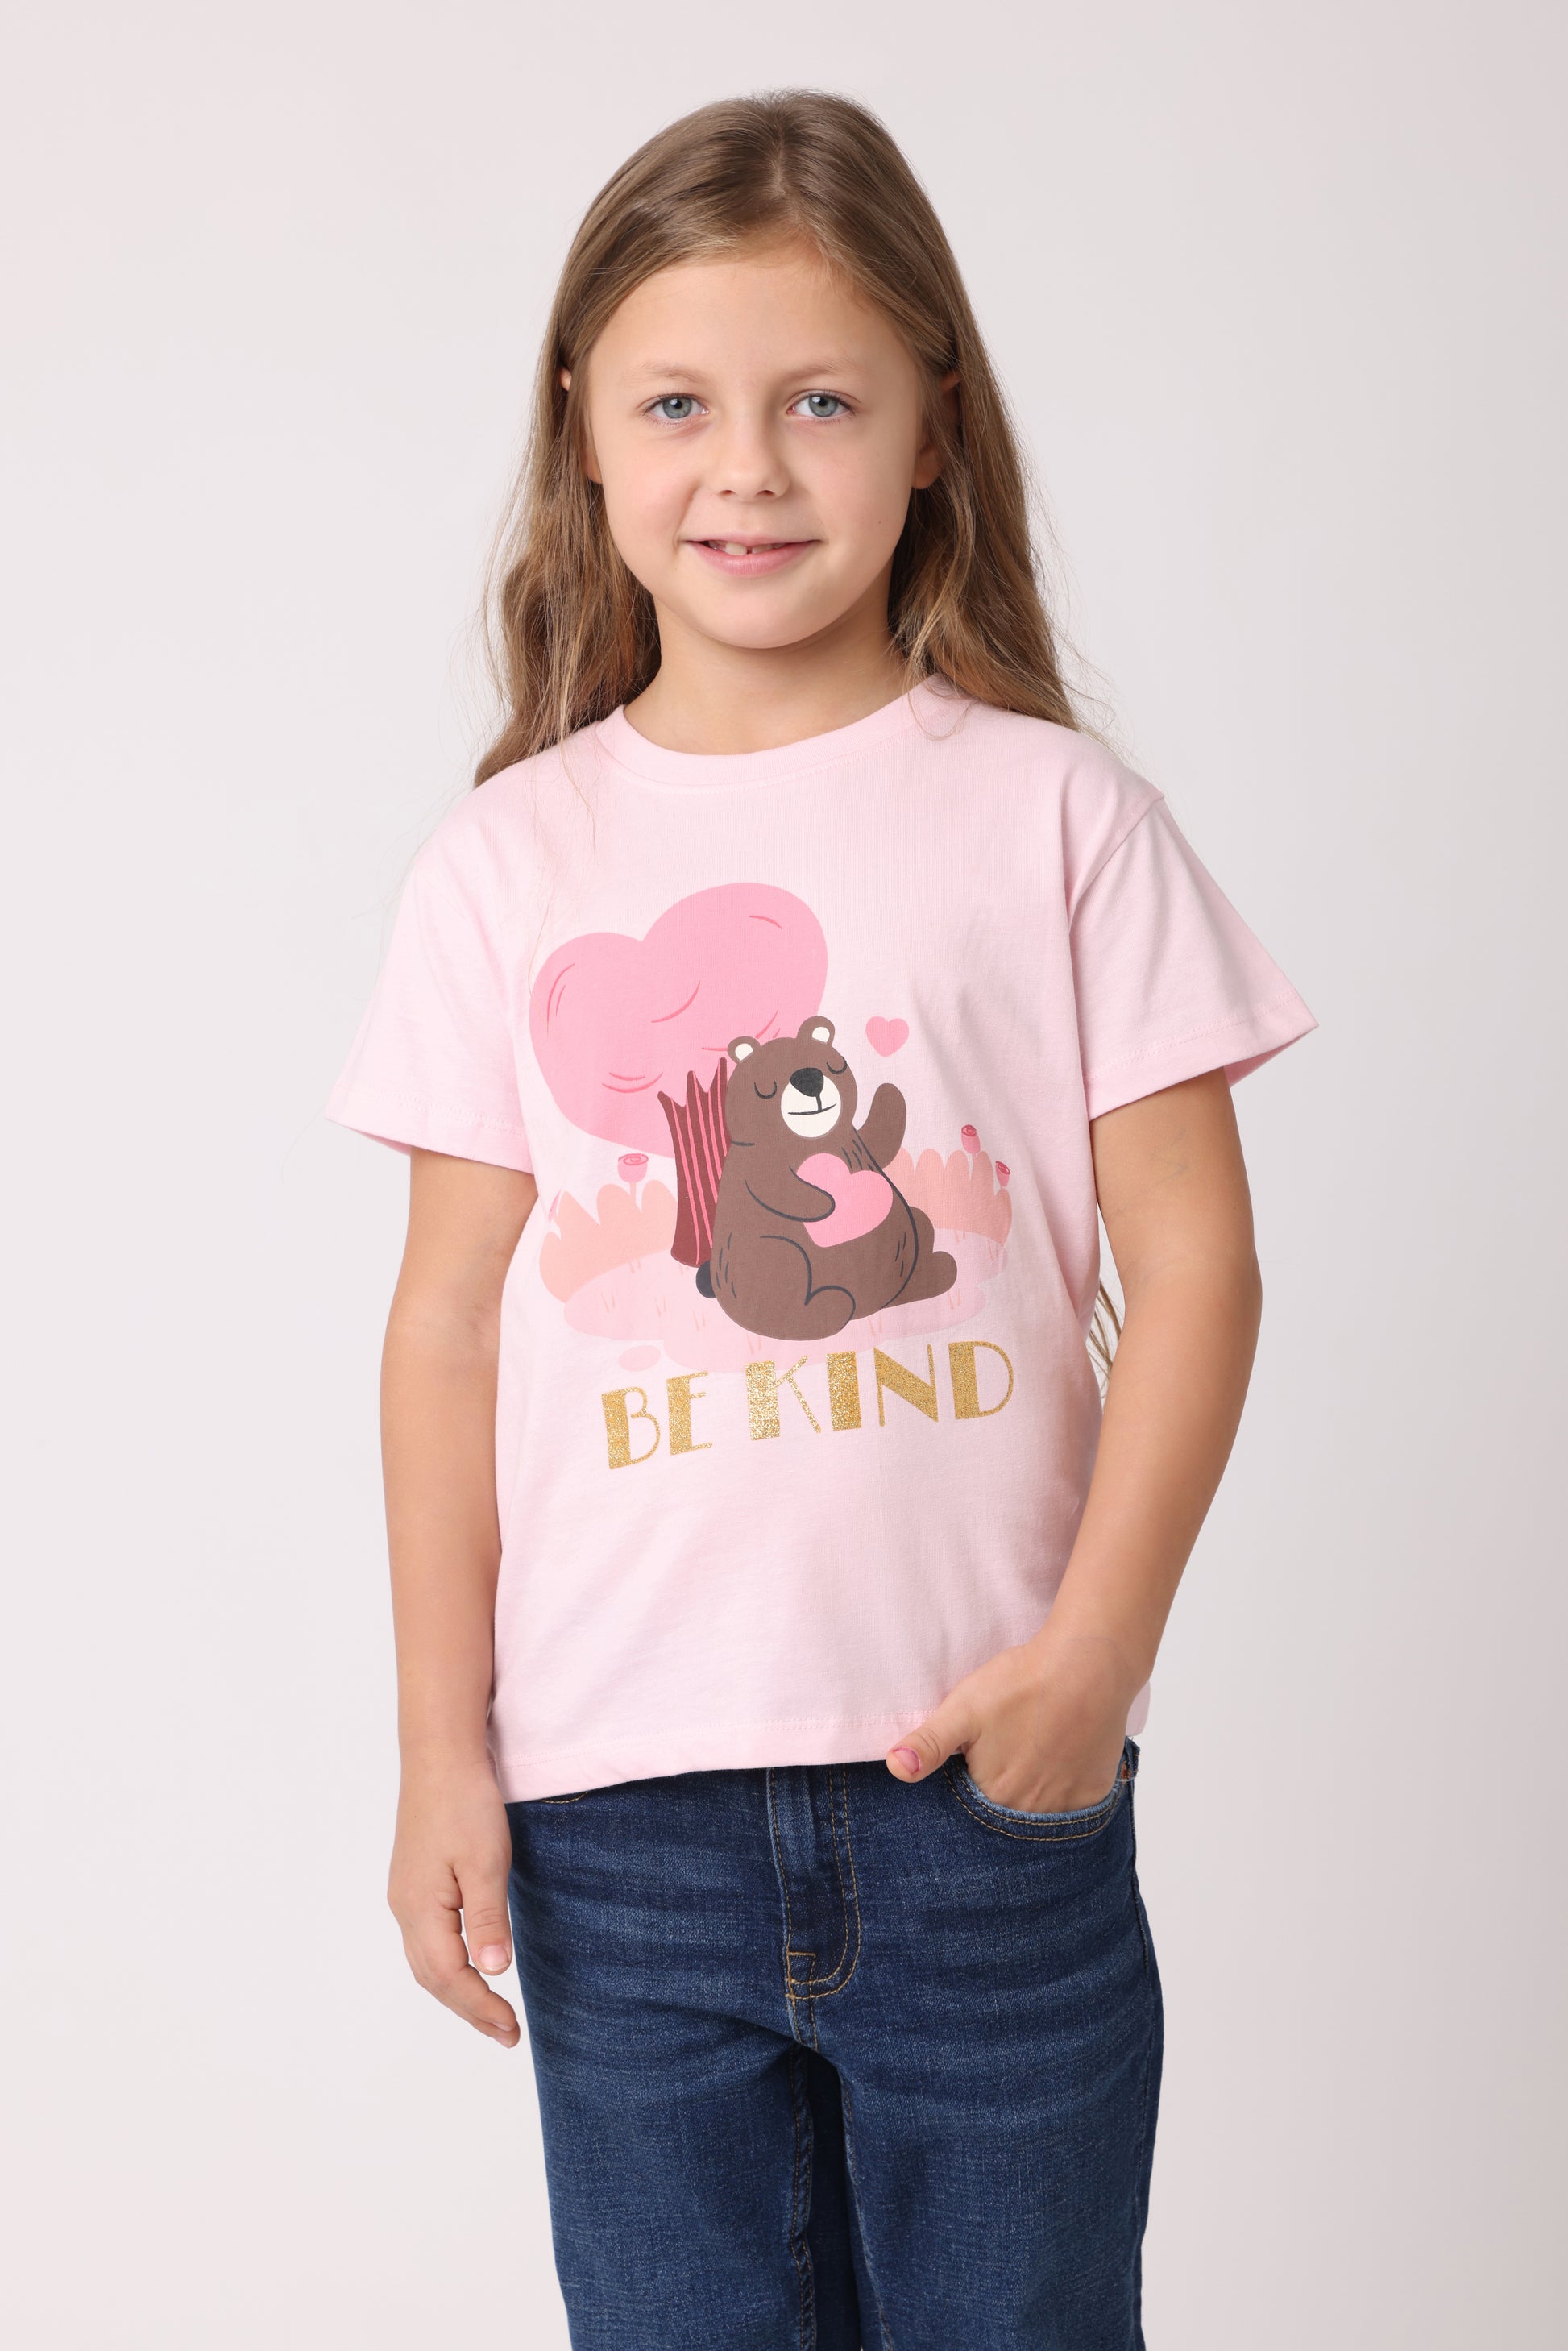 Be KindT-Shirt Girls Organic – Wakai